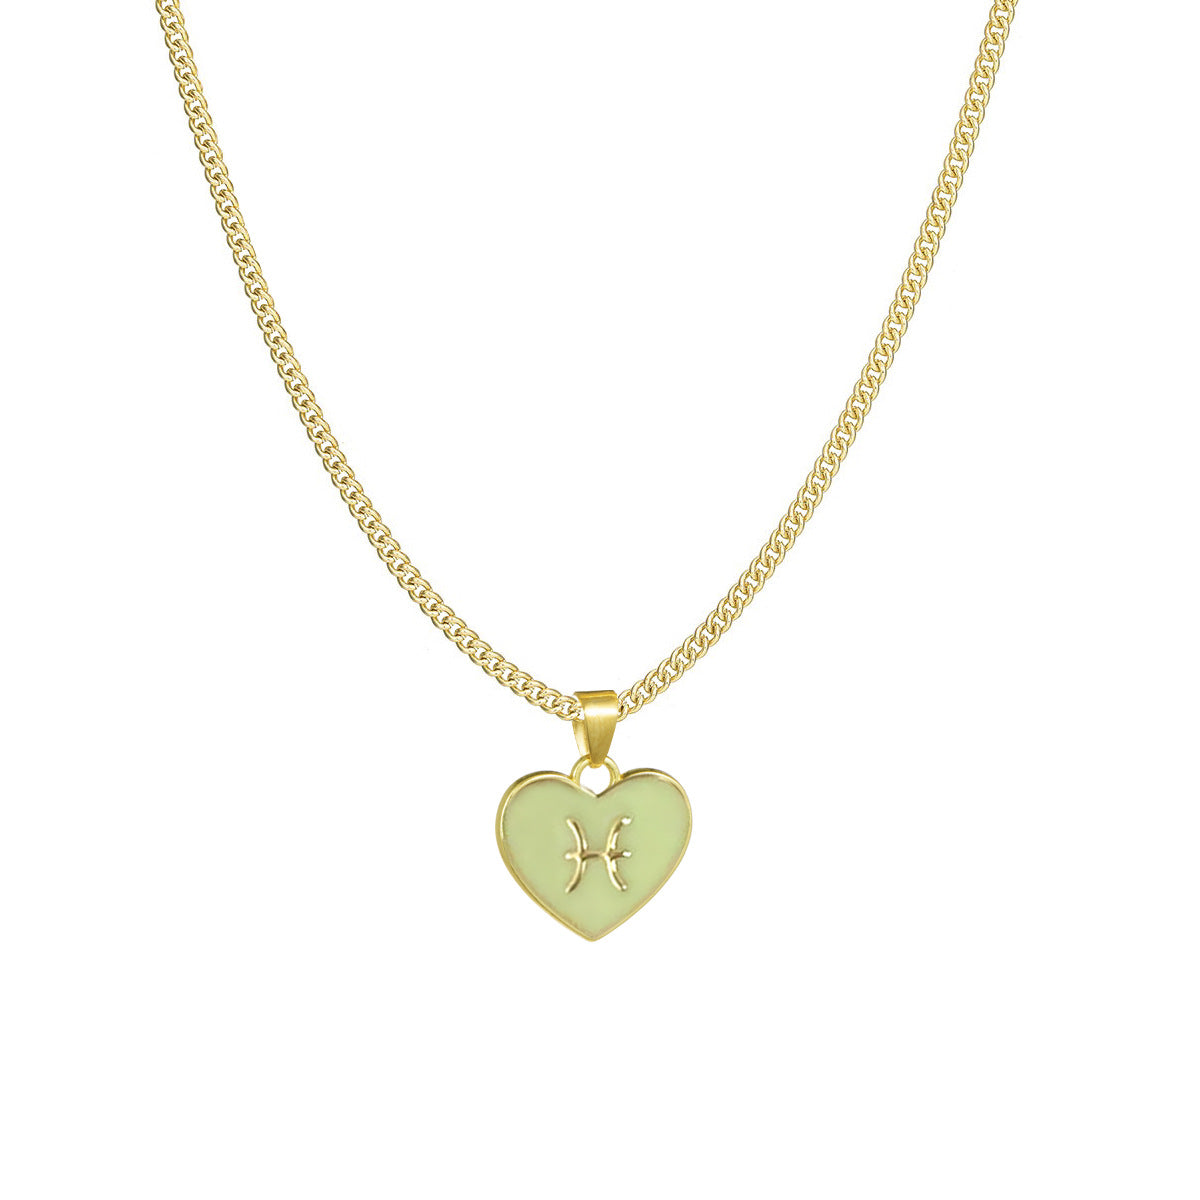 Zodiac heart necklace - NE035